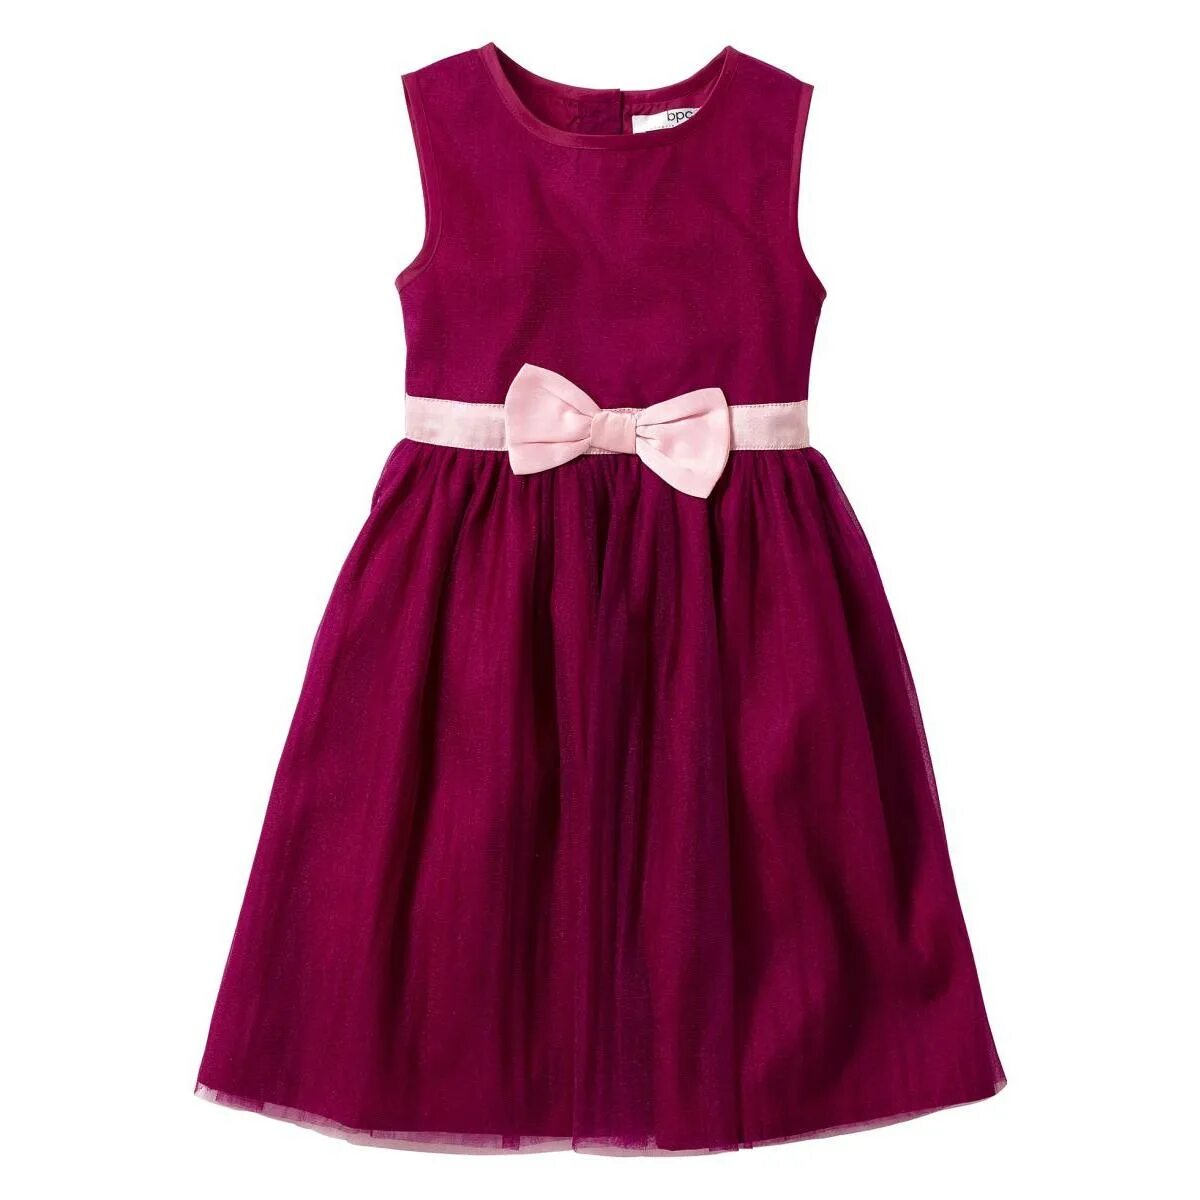 Бордовое платье bonprix. Платье Бонприкс детское. Ягодное платье. Платье ягода bonprix.